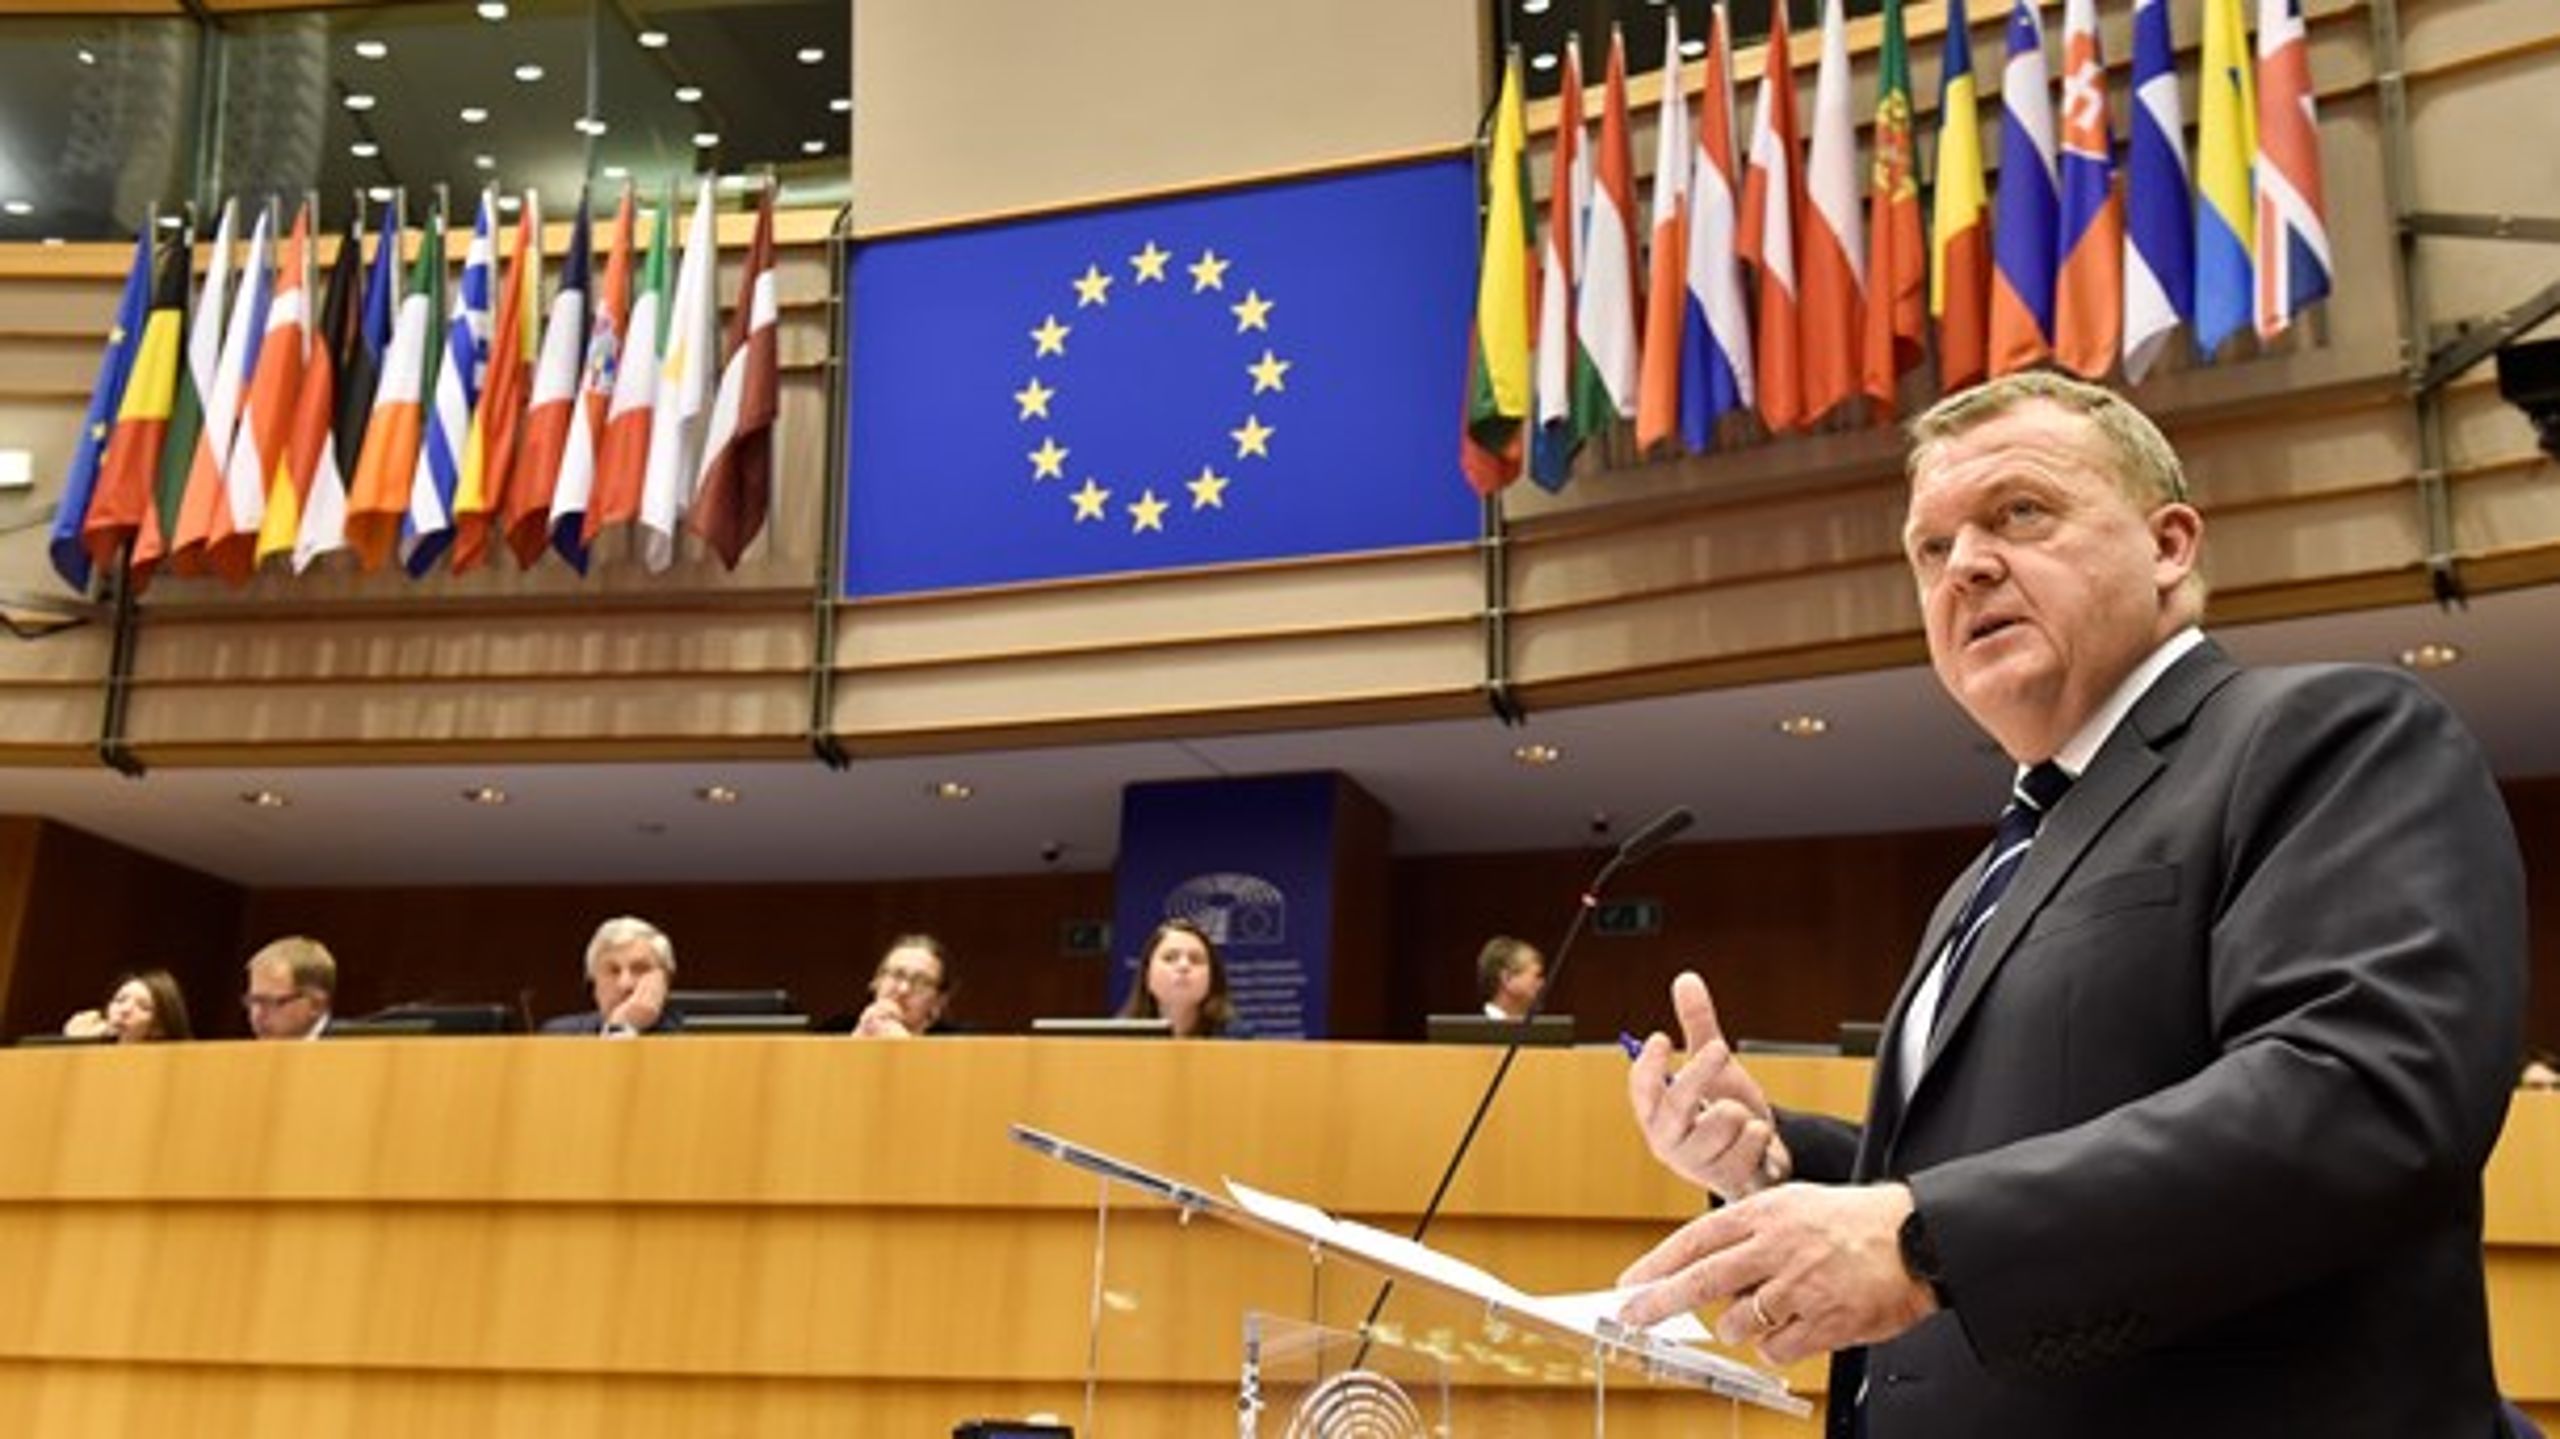 "Det bliver ikke med mig som deltager," sagde statsminister Lars Løkke Rasmussen om en potentiel afstemning om udmeldelse af EU, da han var i Bruxelles for at give sit bud på en vision for Europas fremtid. En ny måling viser, at et stort flertal af befolkningen ligesom Løkke helst bliver i EU.